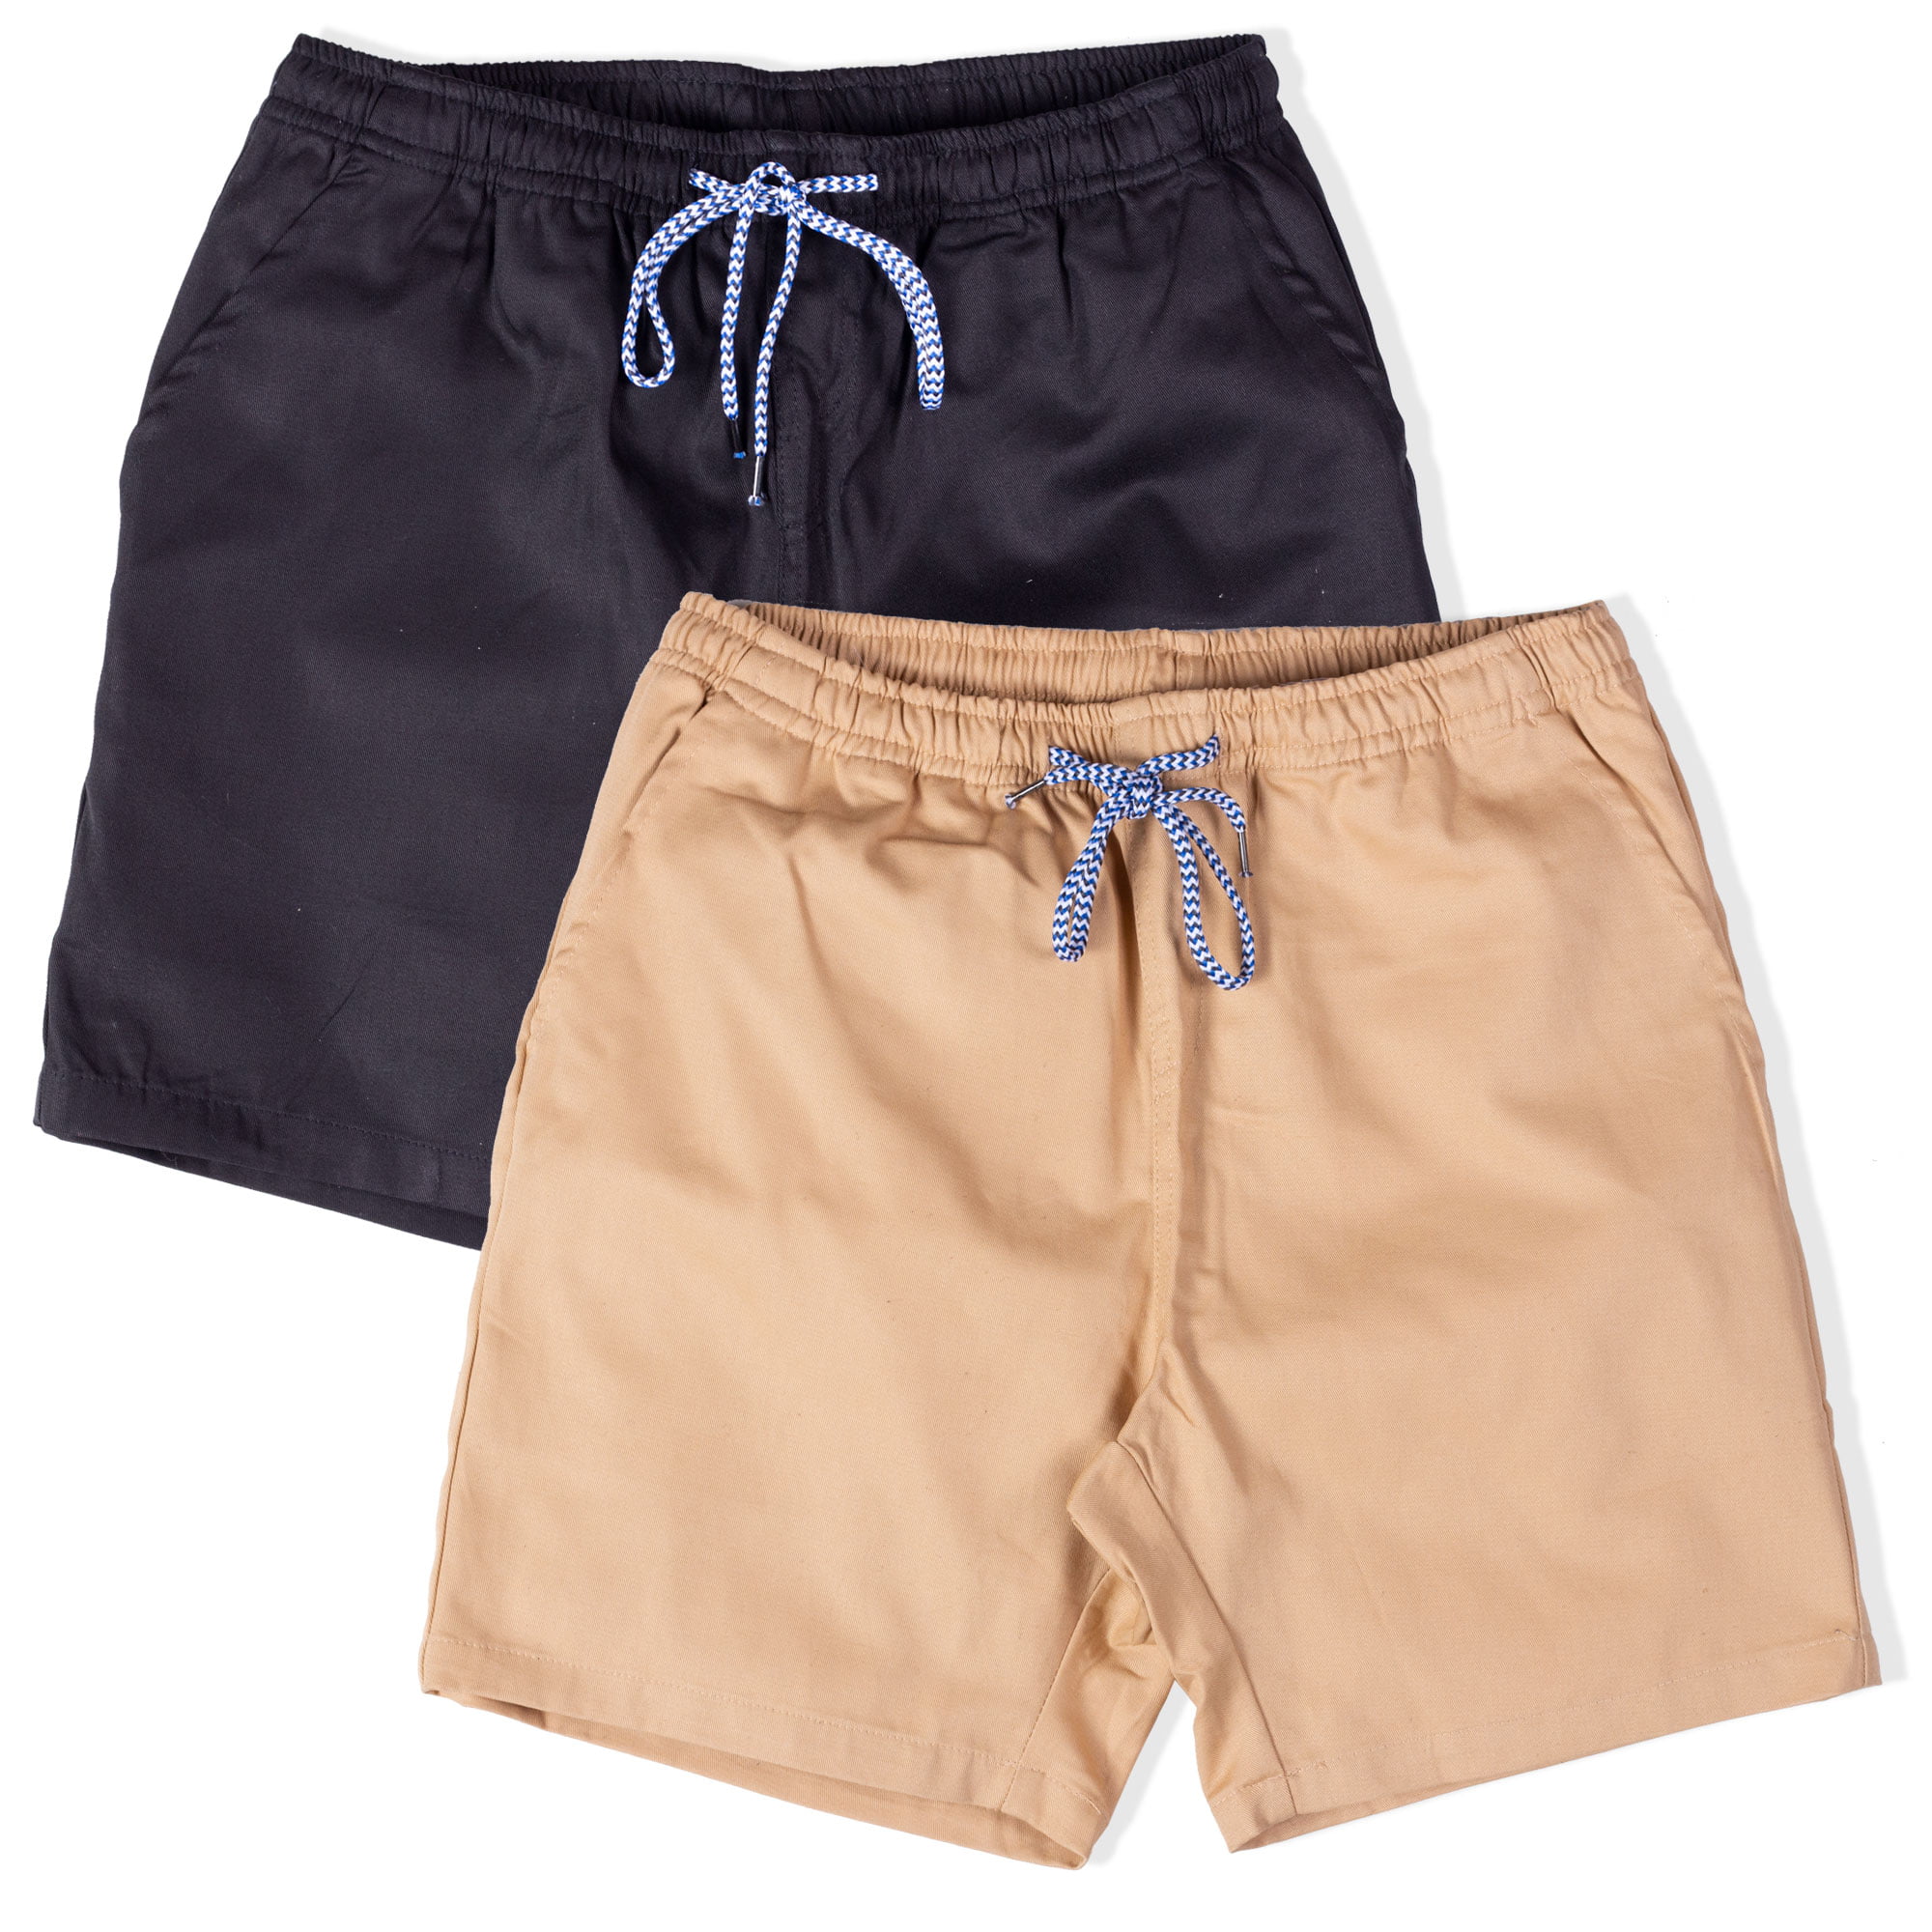 Alalaso Mens Shorts Casual Drawstring Pockets Elastic Waist Shorts Sweatpants Drawstring Short